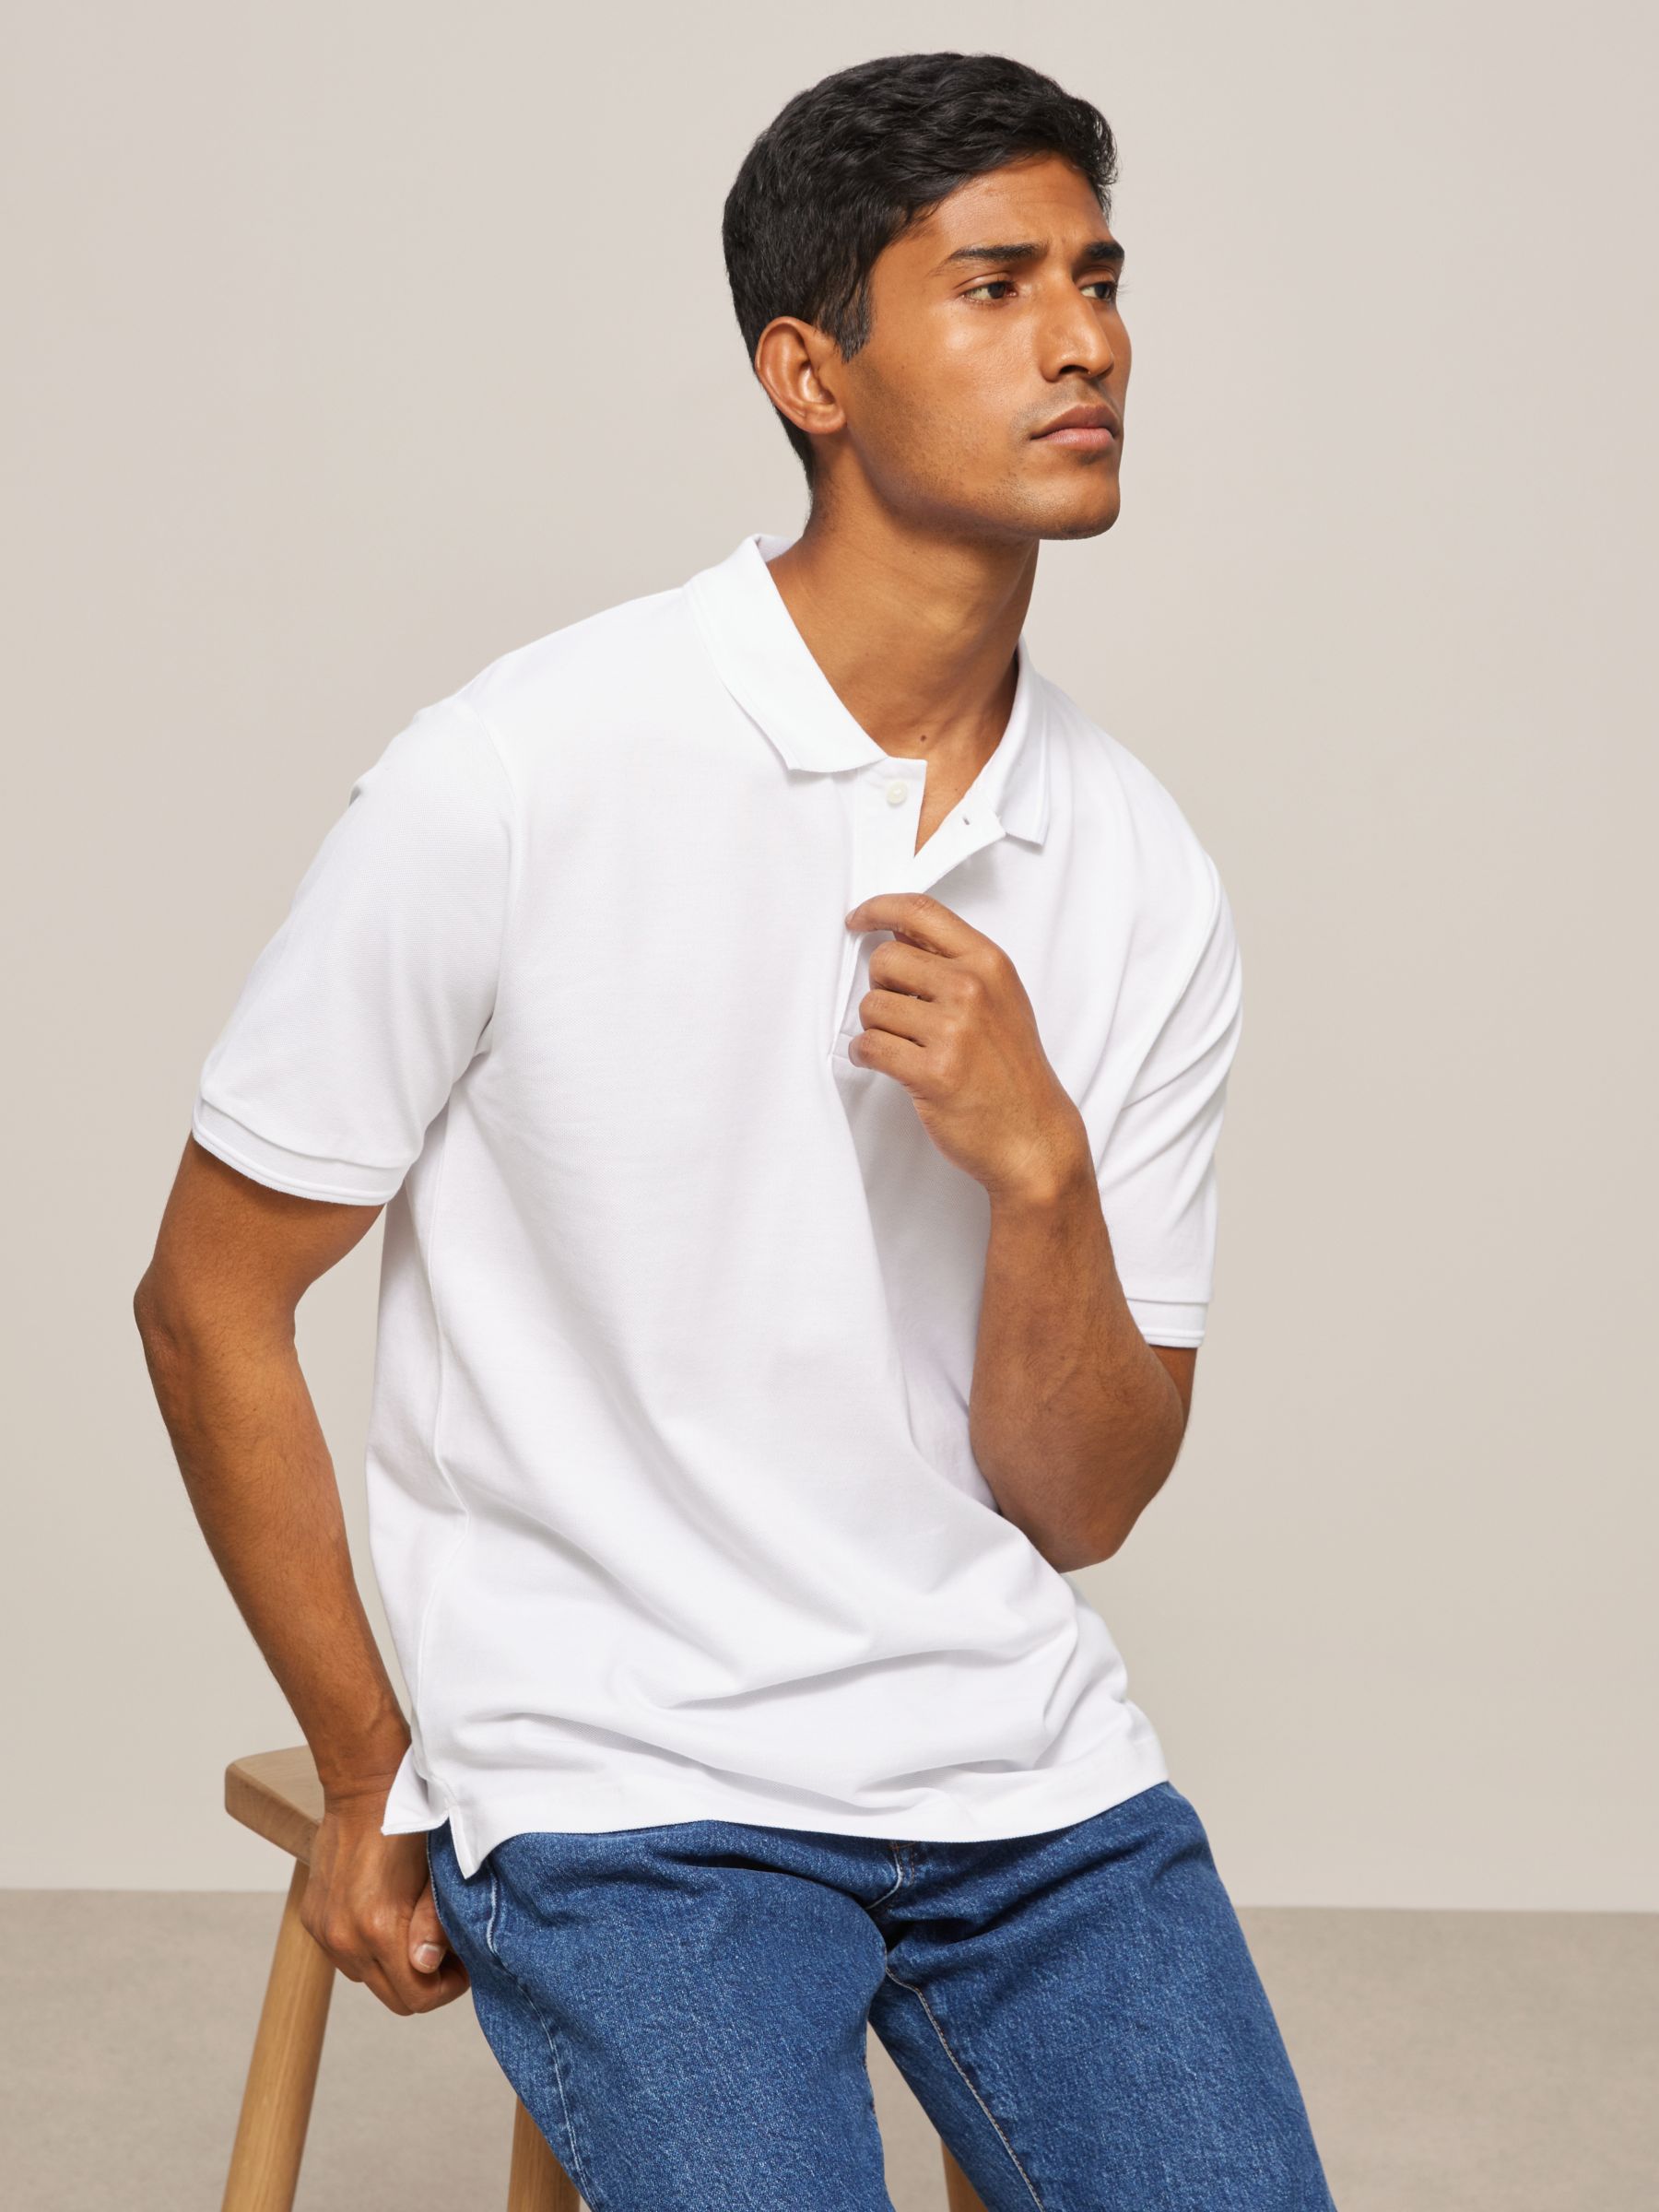 John Lewis Supima Cotton Jersey Polo Shirt, White, S